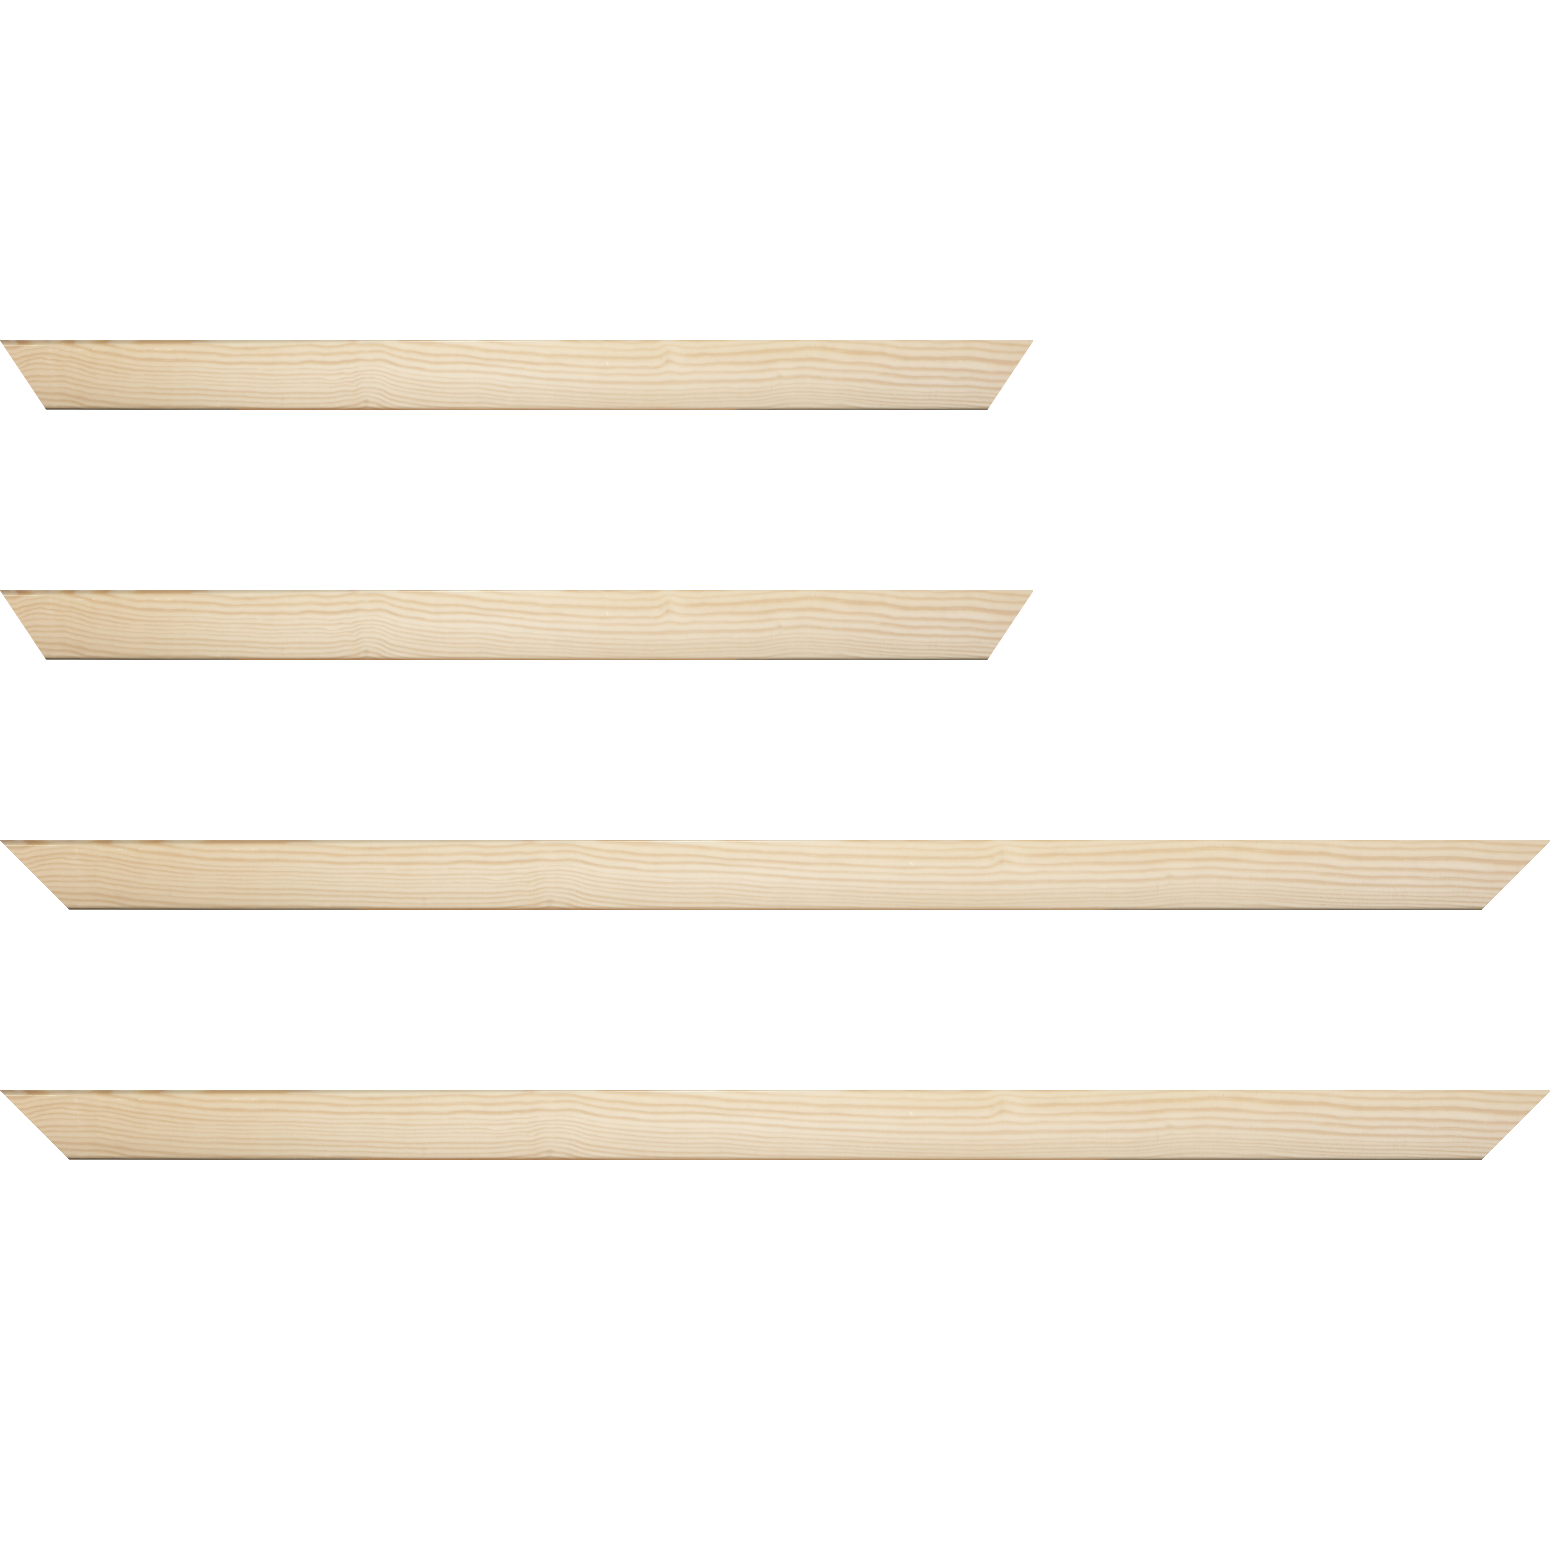 Baguette bois profil arrondi en pente plongeant largeur 2.4cm couleur naturel finition vernis brillant,veine du bois  apparent (pin) ,